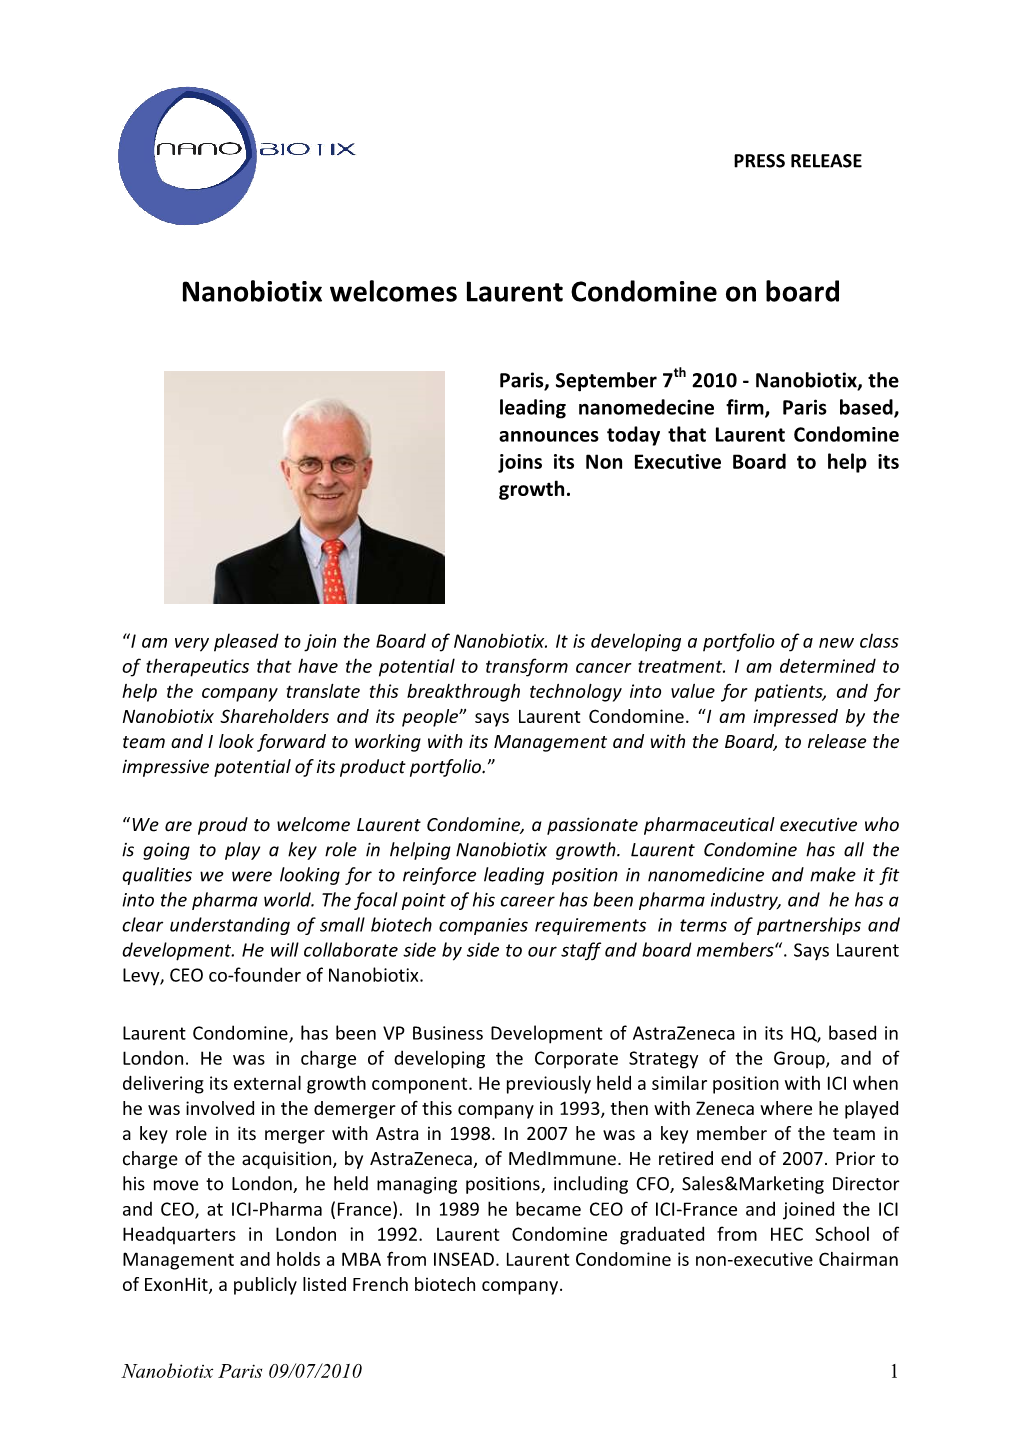 Nanobiotix Welcomes Laurent Condomine on Board